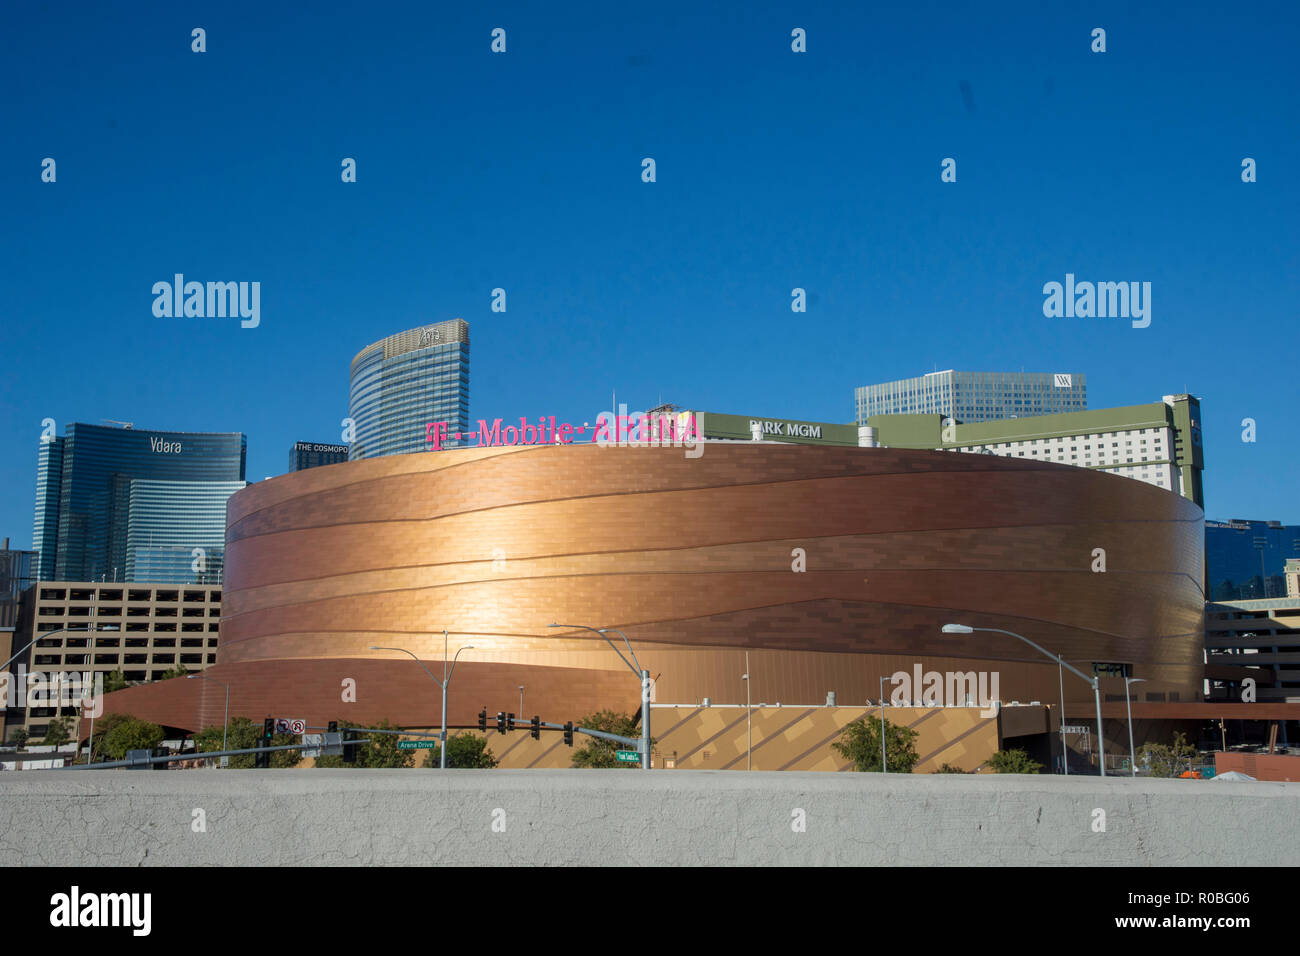 Vista exterior del T-Mobile Arena en Las Vegas, Nevada. El recinto multiuso es el hogar del Las Vegas Golden Knights de hockey. Foto de stock